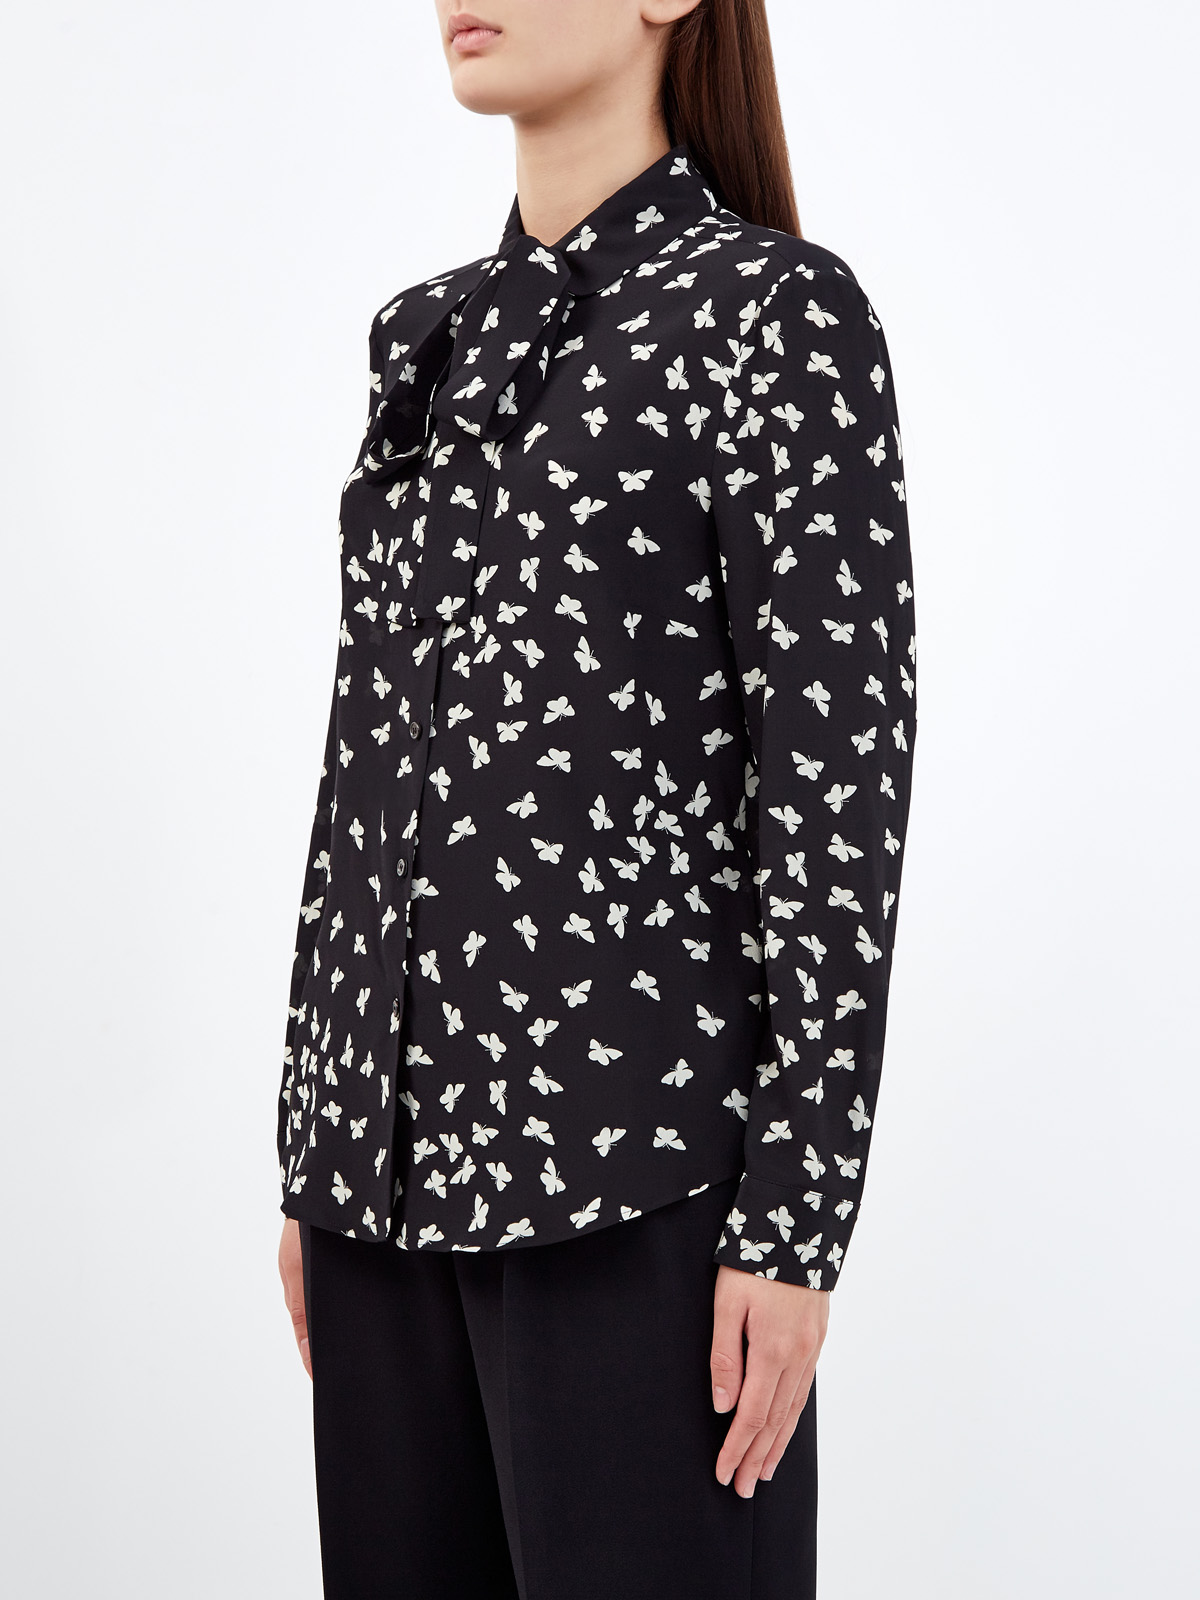 Шелковая блуза с принтом «Тысяча бабочек» REDVALENTINO, цвет мульти, размер M;XL;S - фото 3